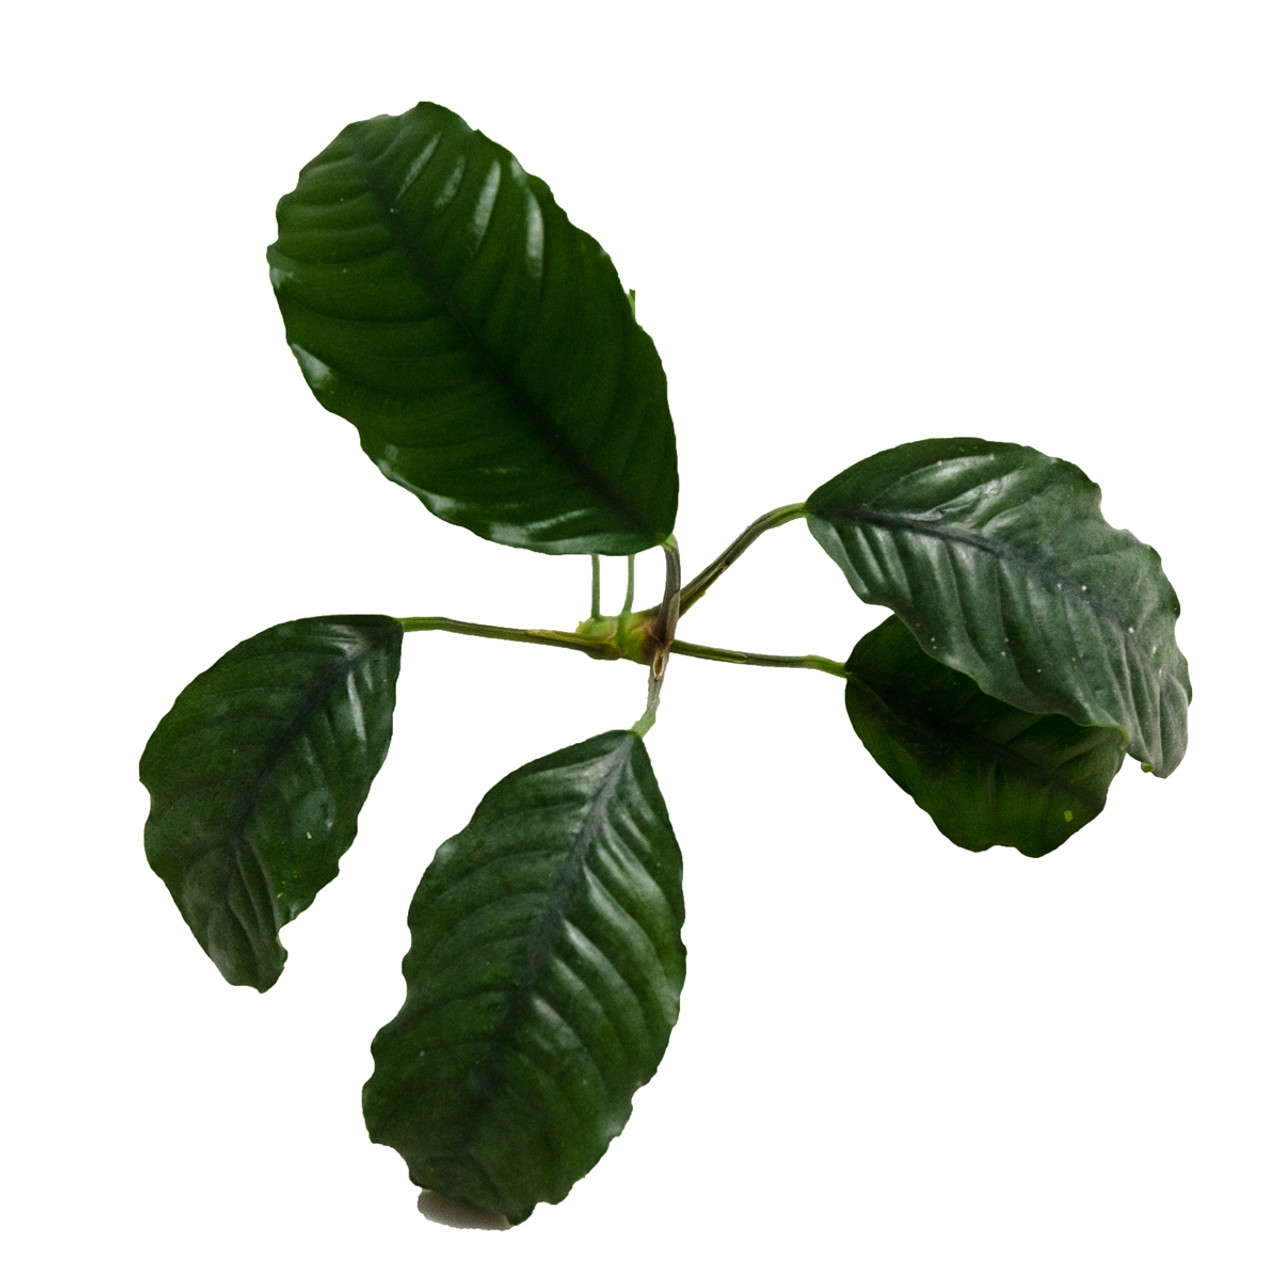 انوبیاس کافی فولیا   anubias coffeefolia